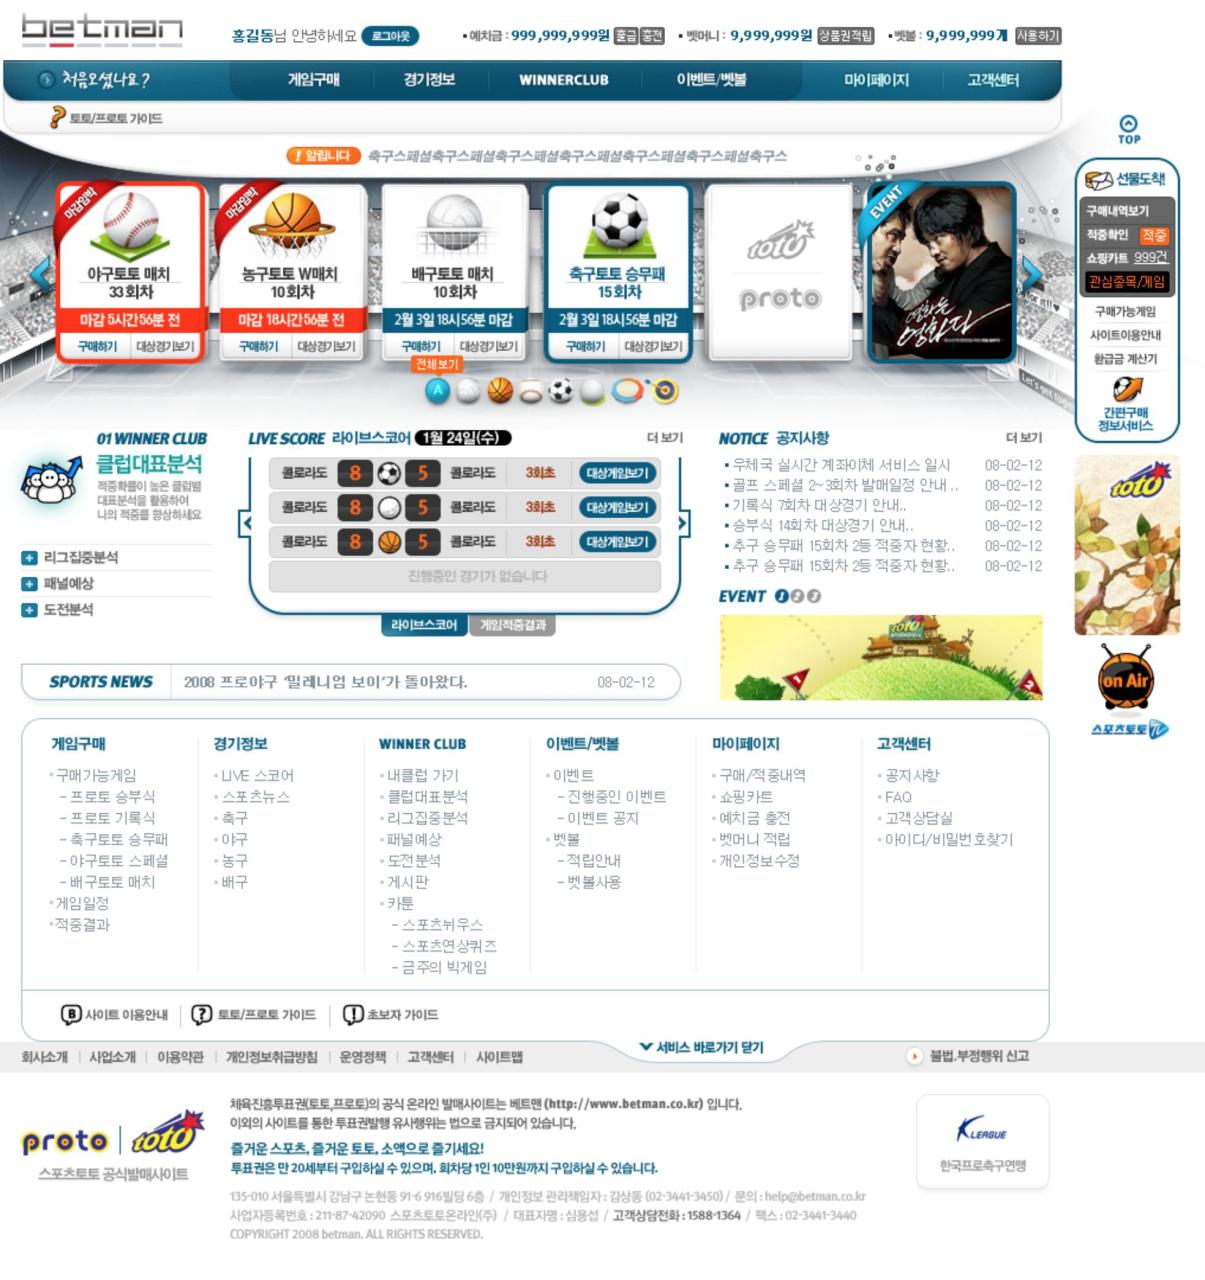 스포츠토토온라인 사이트 개발, 홈페이지 포트폴리오 - 크몽